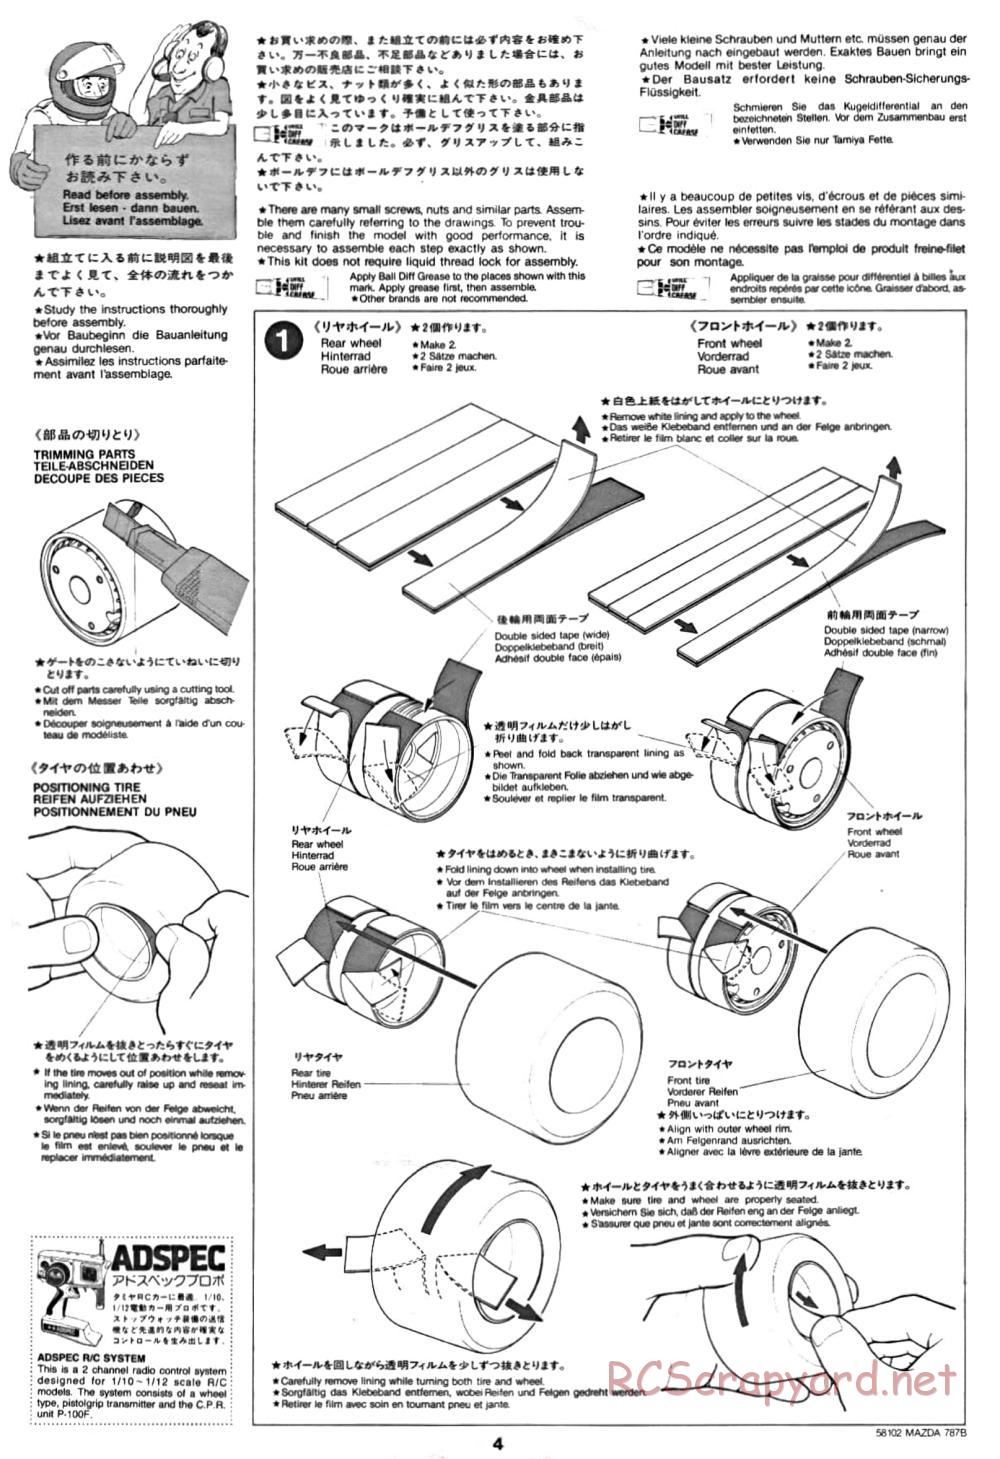 Tamiya - Mazda 787B - Group-C Chassis - Manual - Page 4